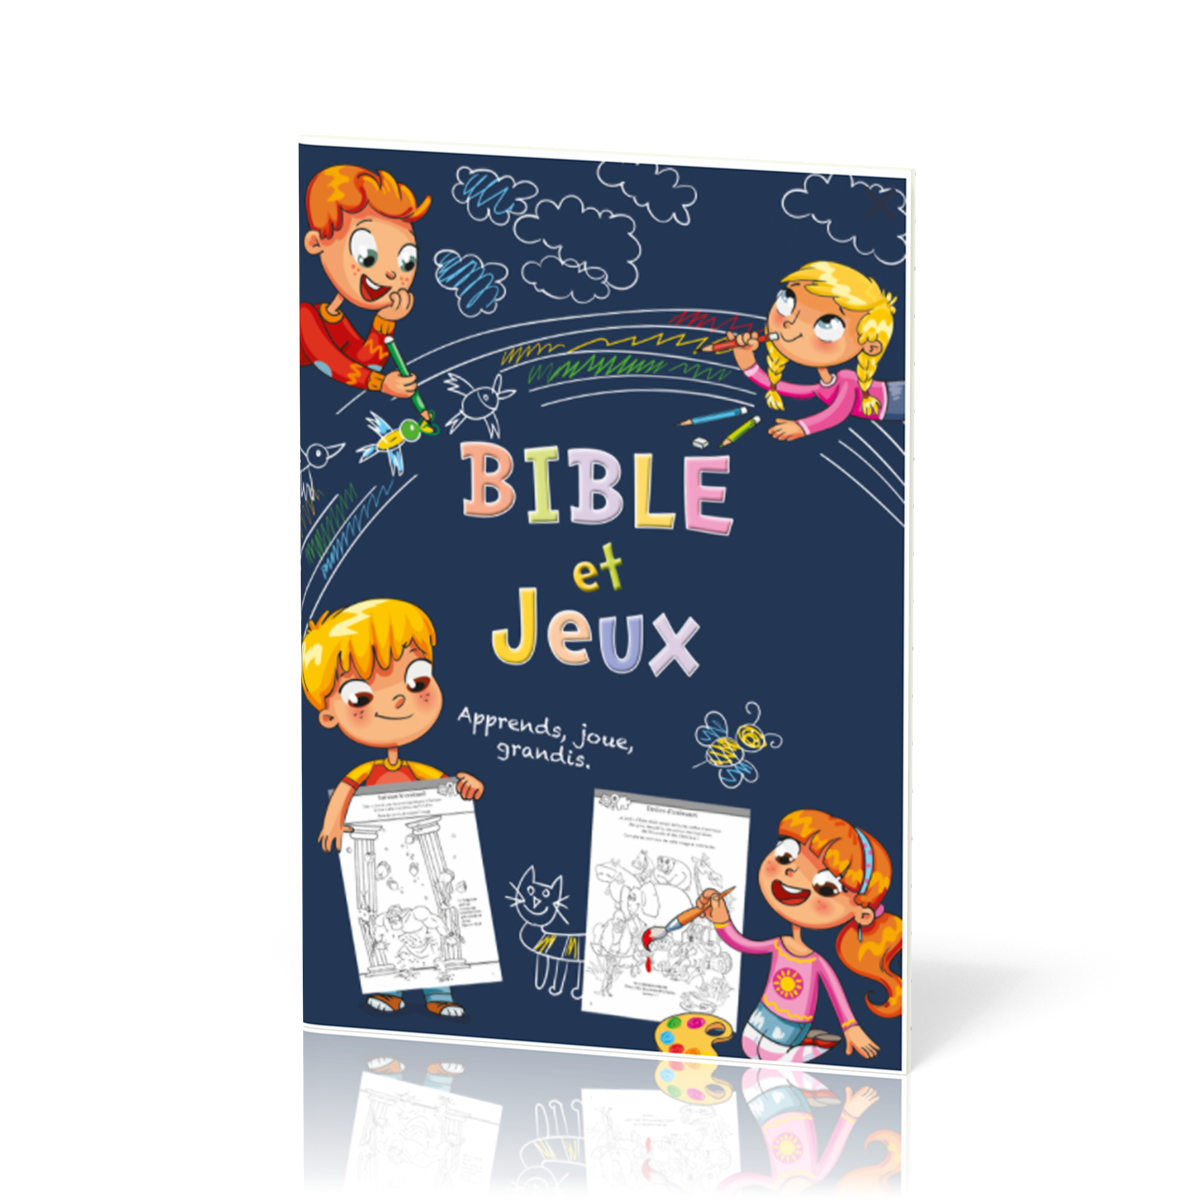 Bible et Jeux - Apprends, joue, grandis